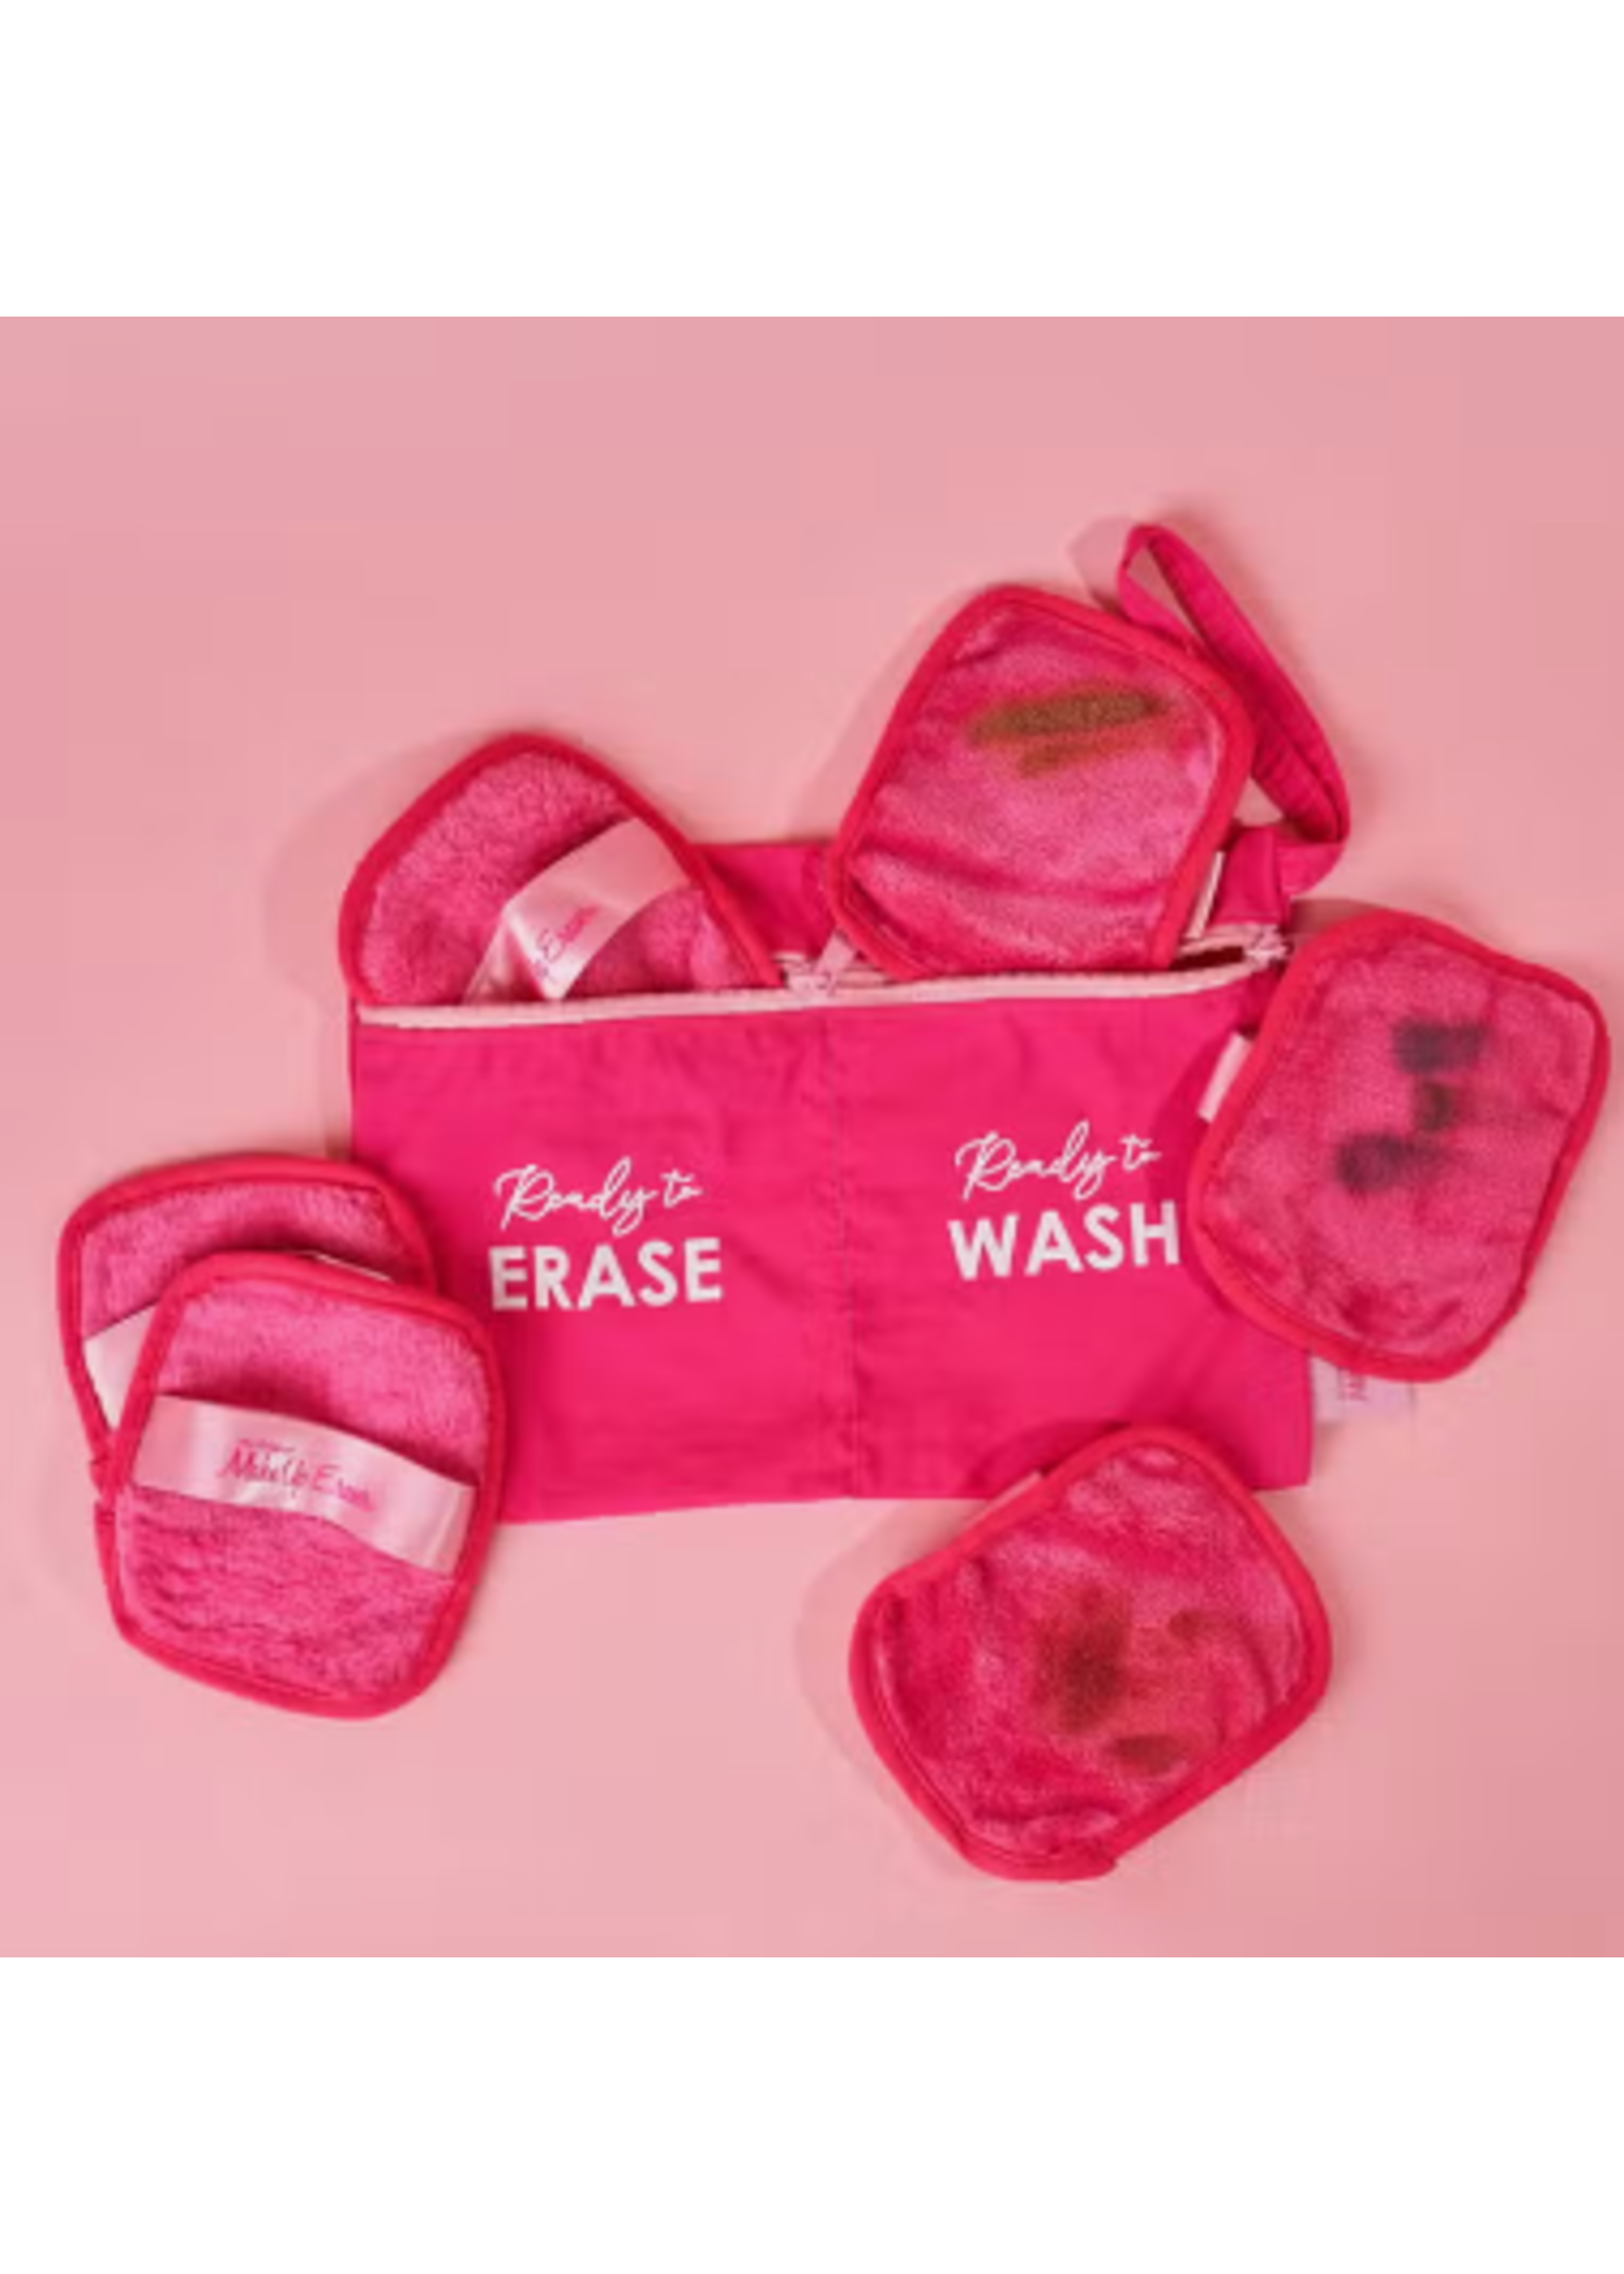 MakeUp Eraser - Wet/Dry Bag